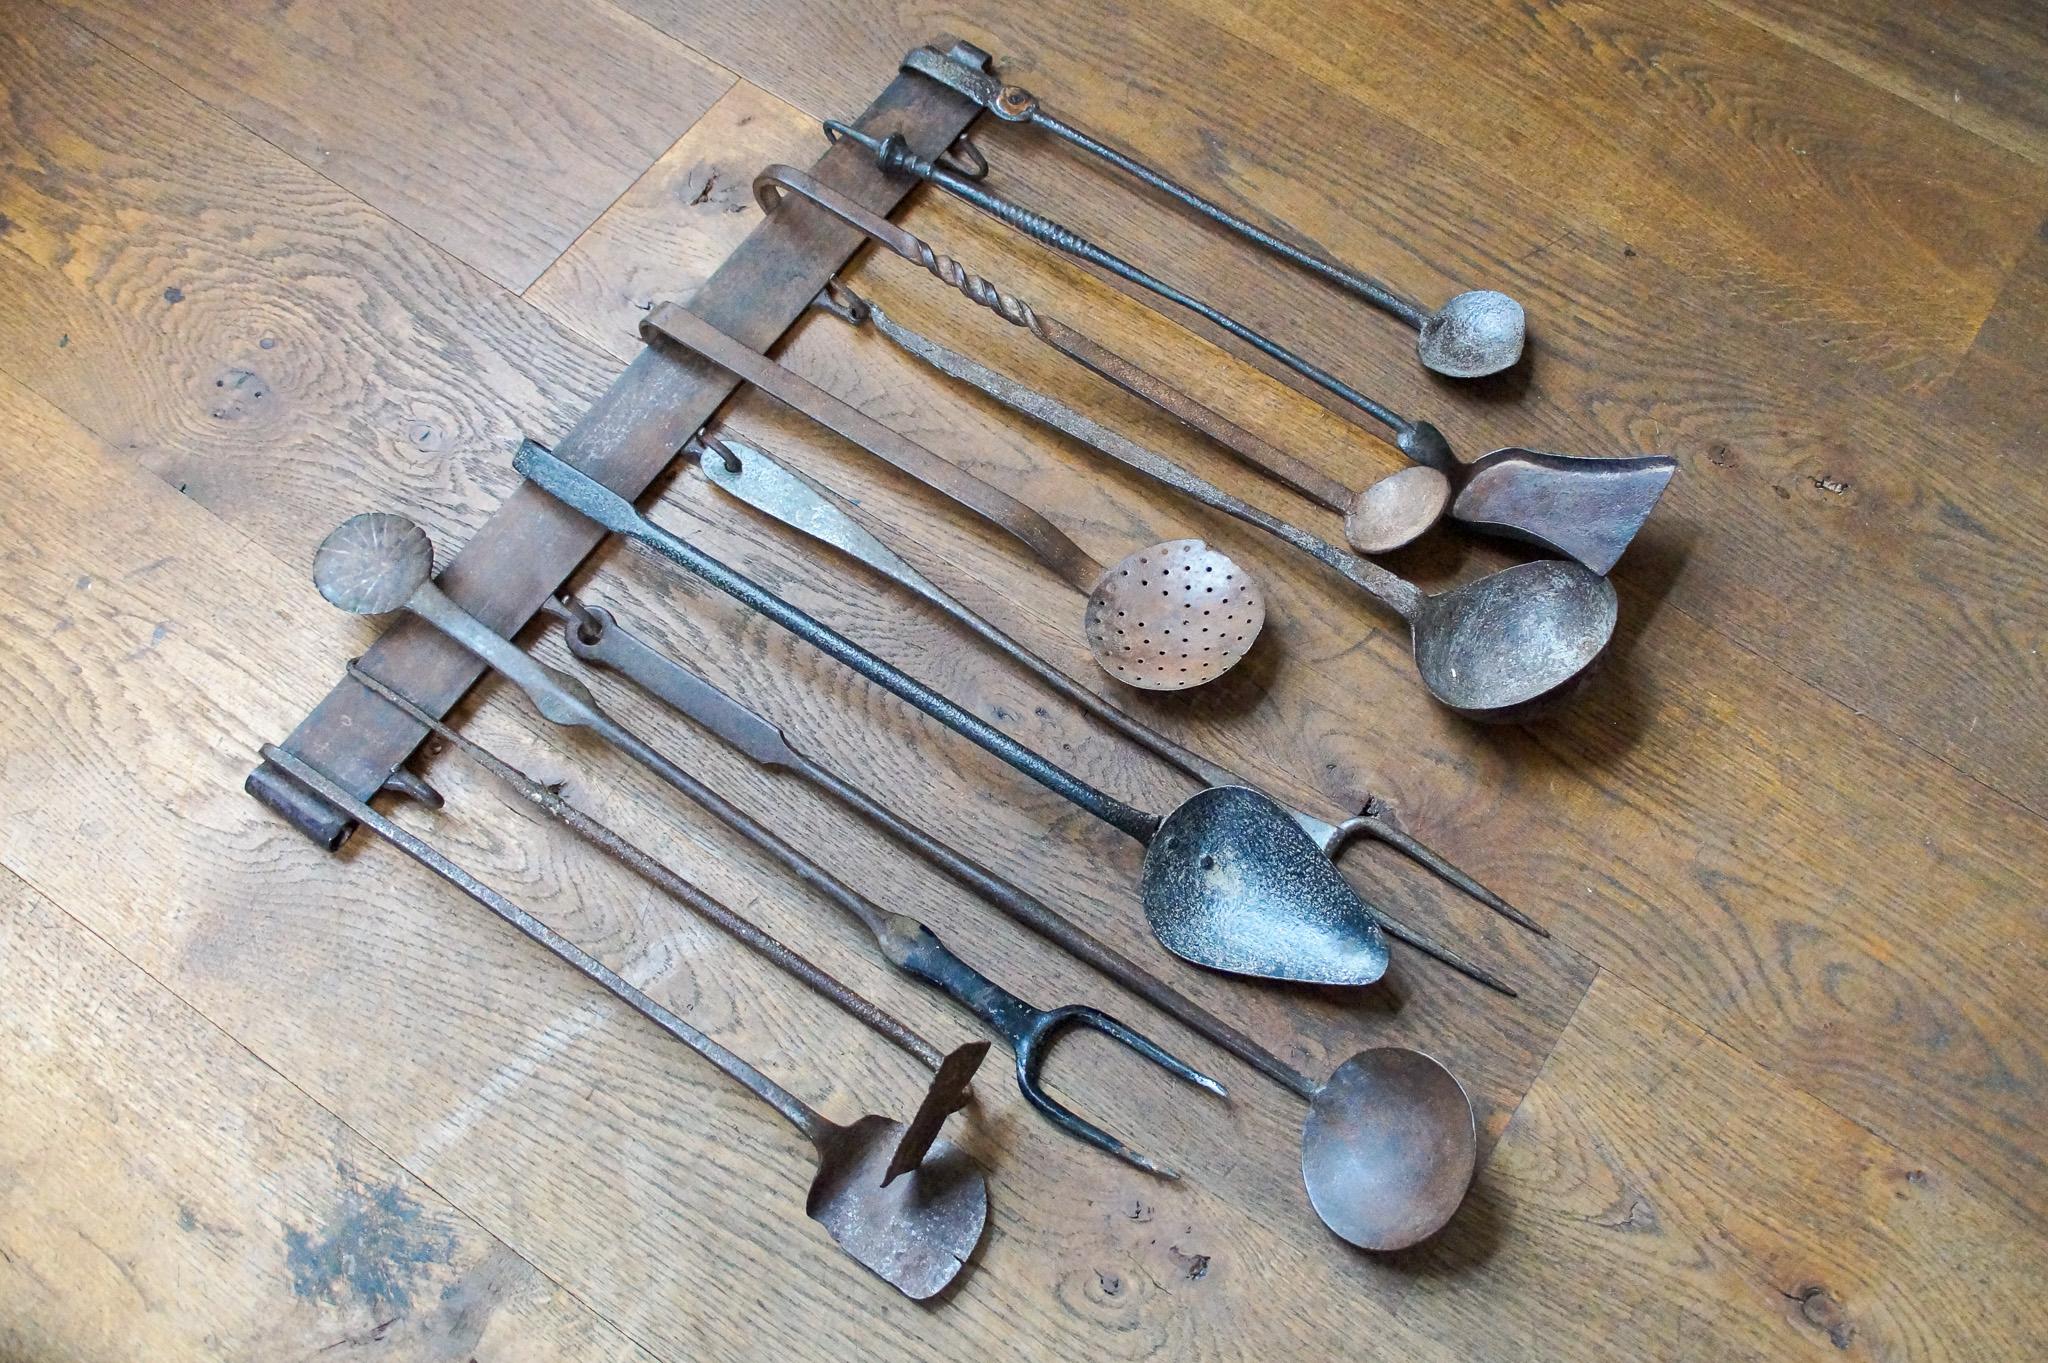 18th century kitchen utensils